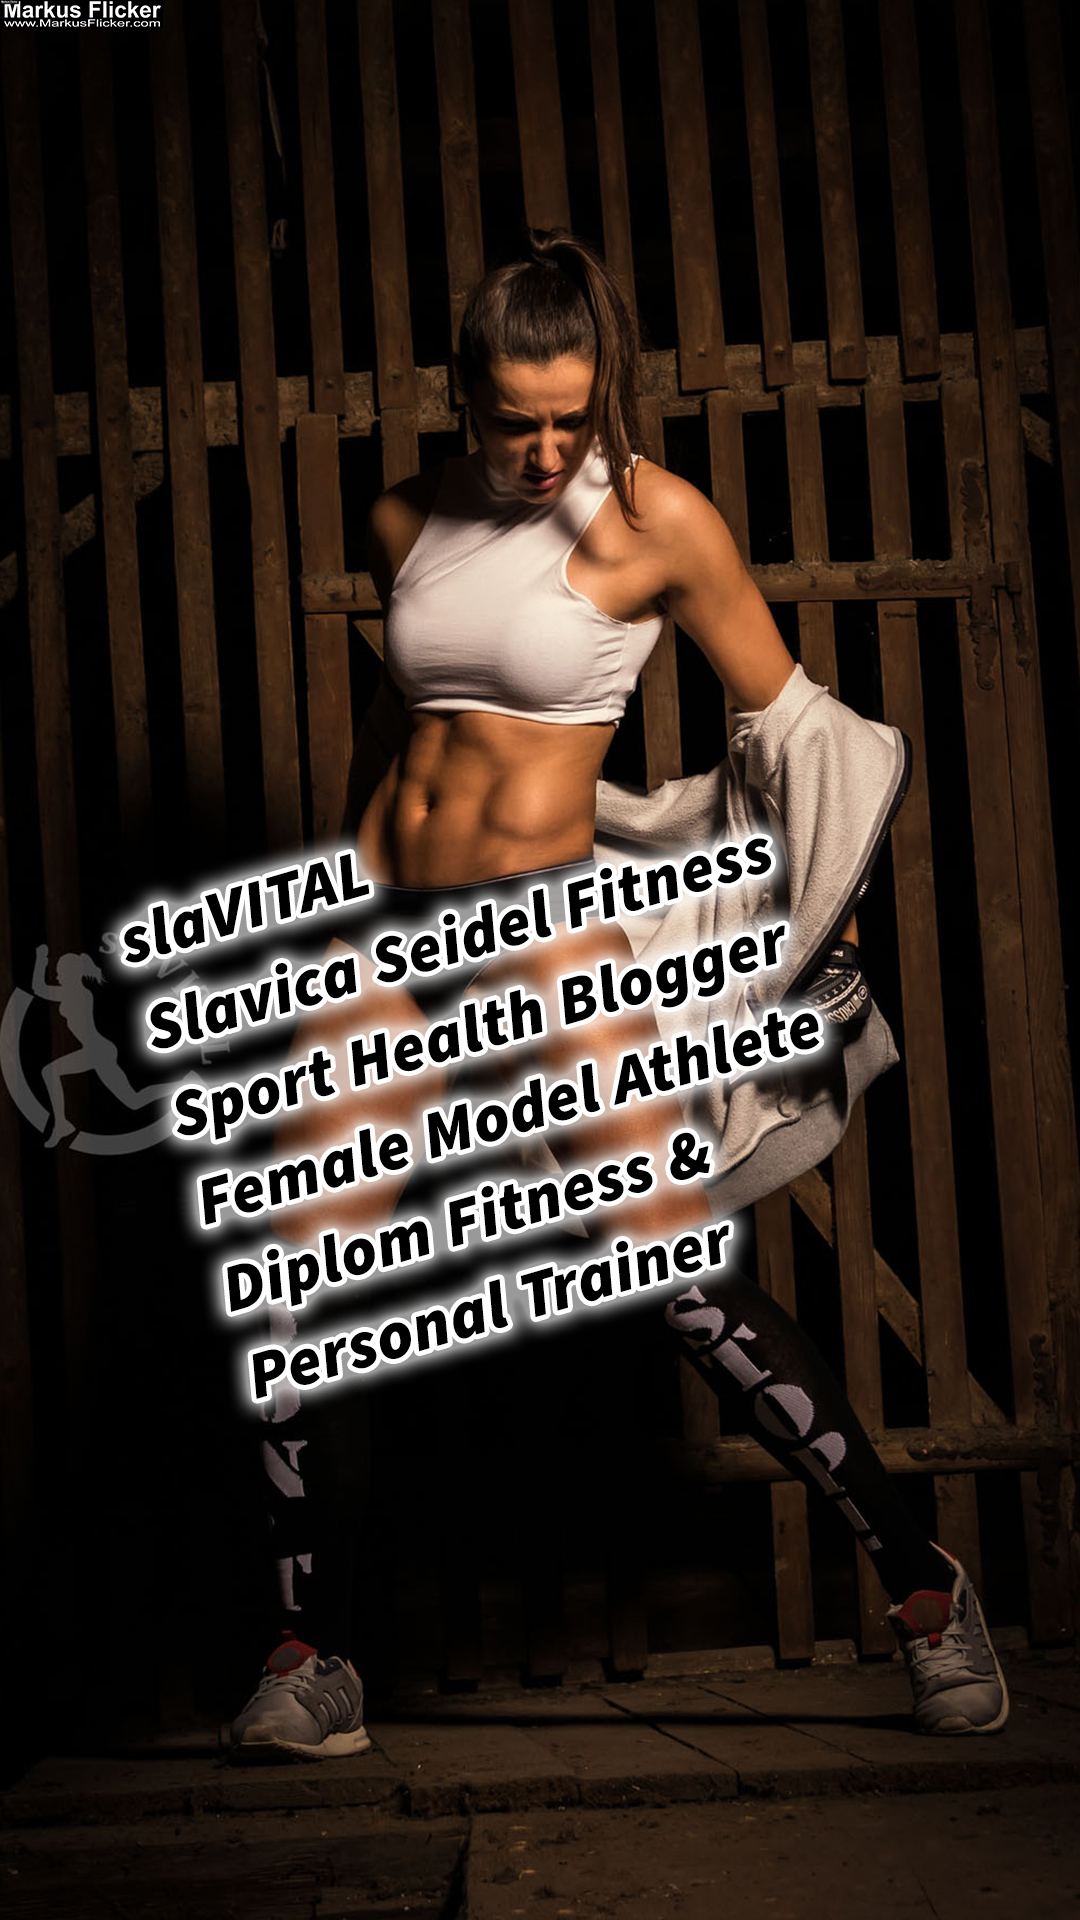 slaVITAL Slavica Seidel Fitness Sport Health Blogger Female Model Athlete Diplom Fitness & Personal Trainer